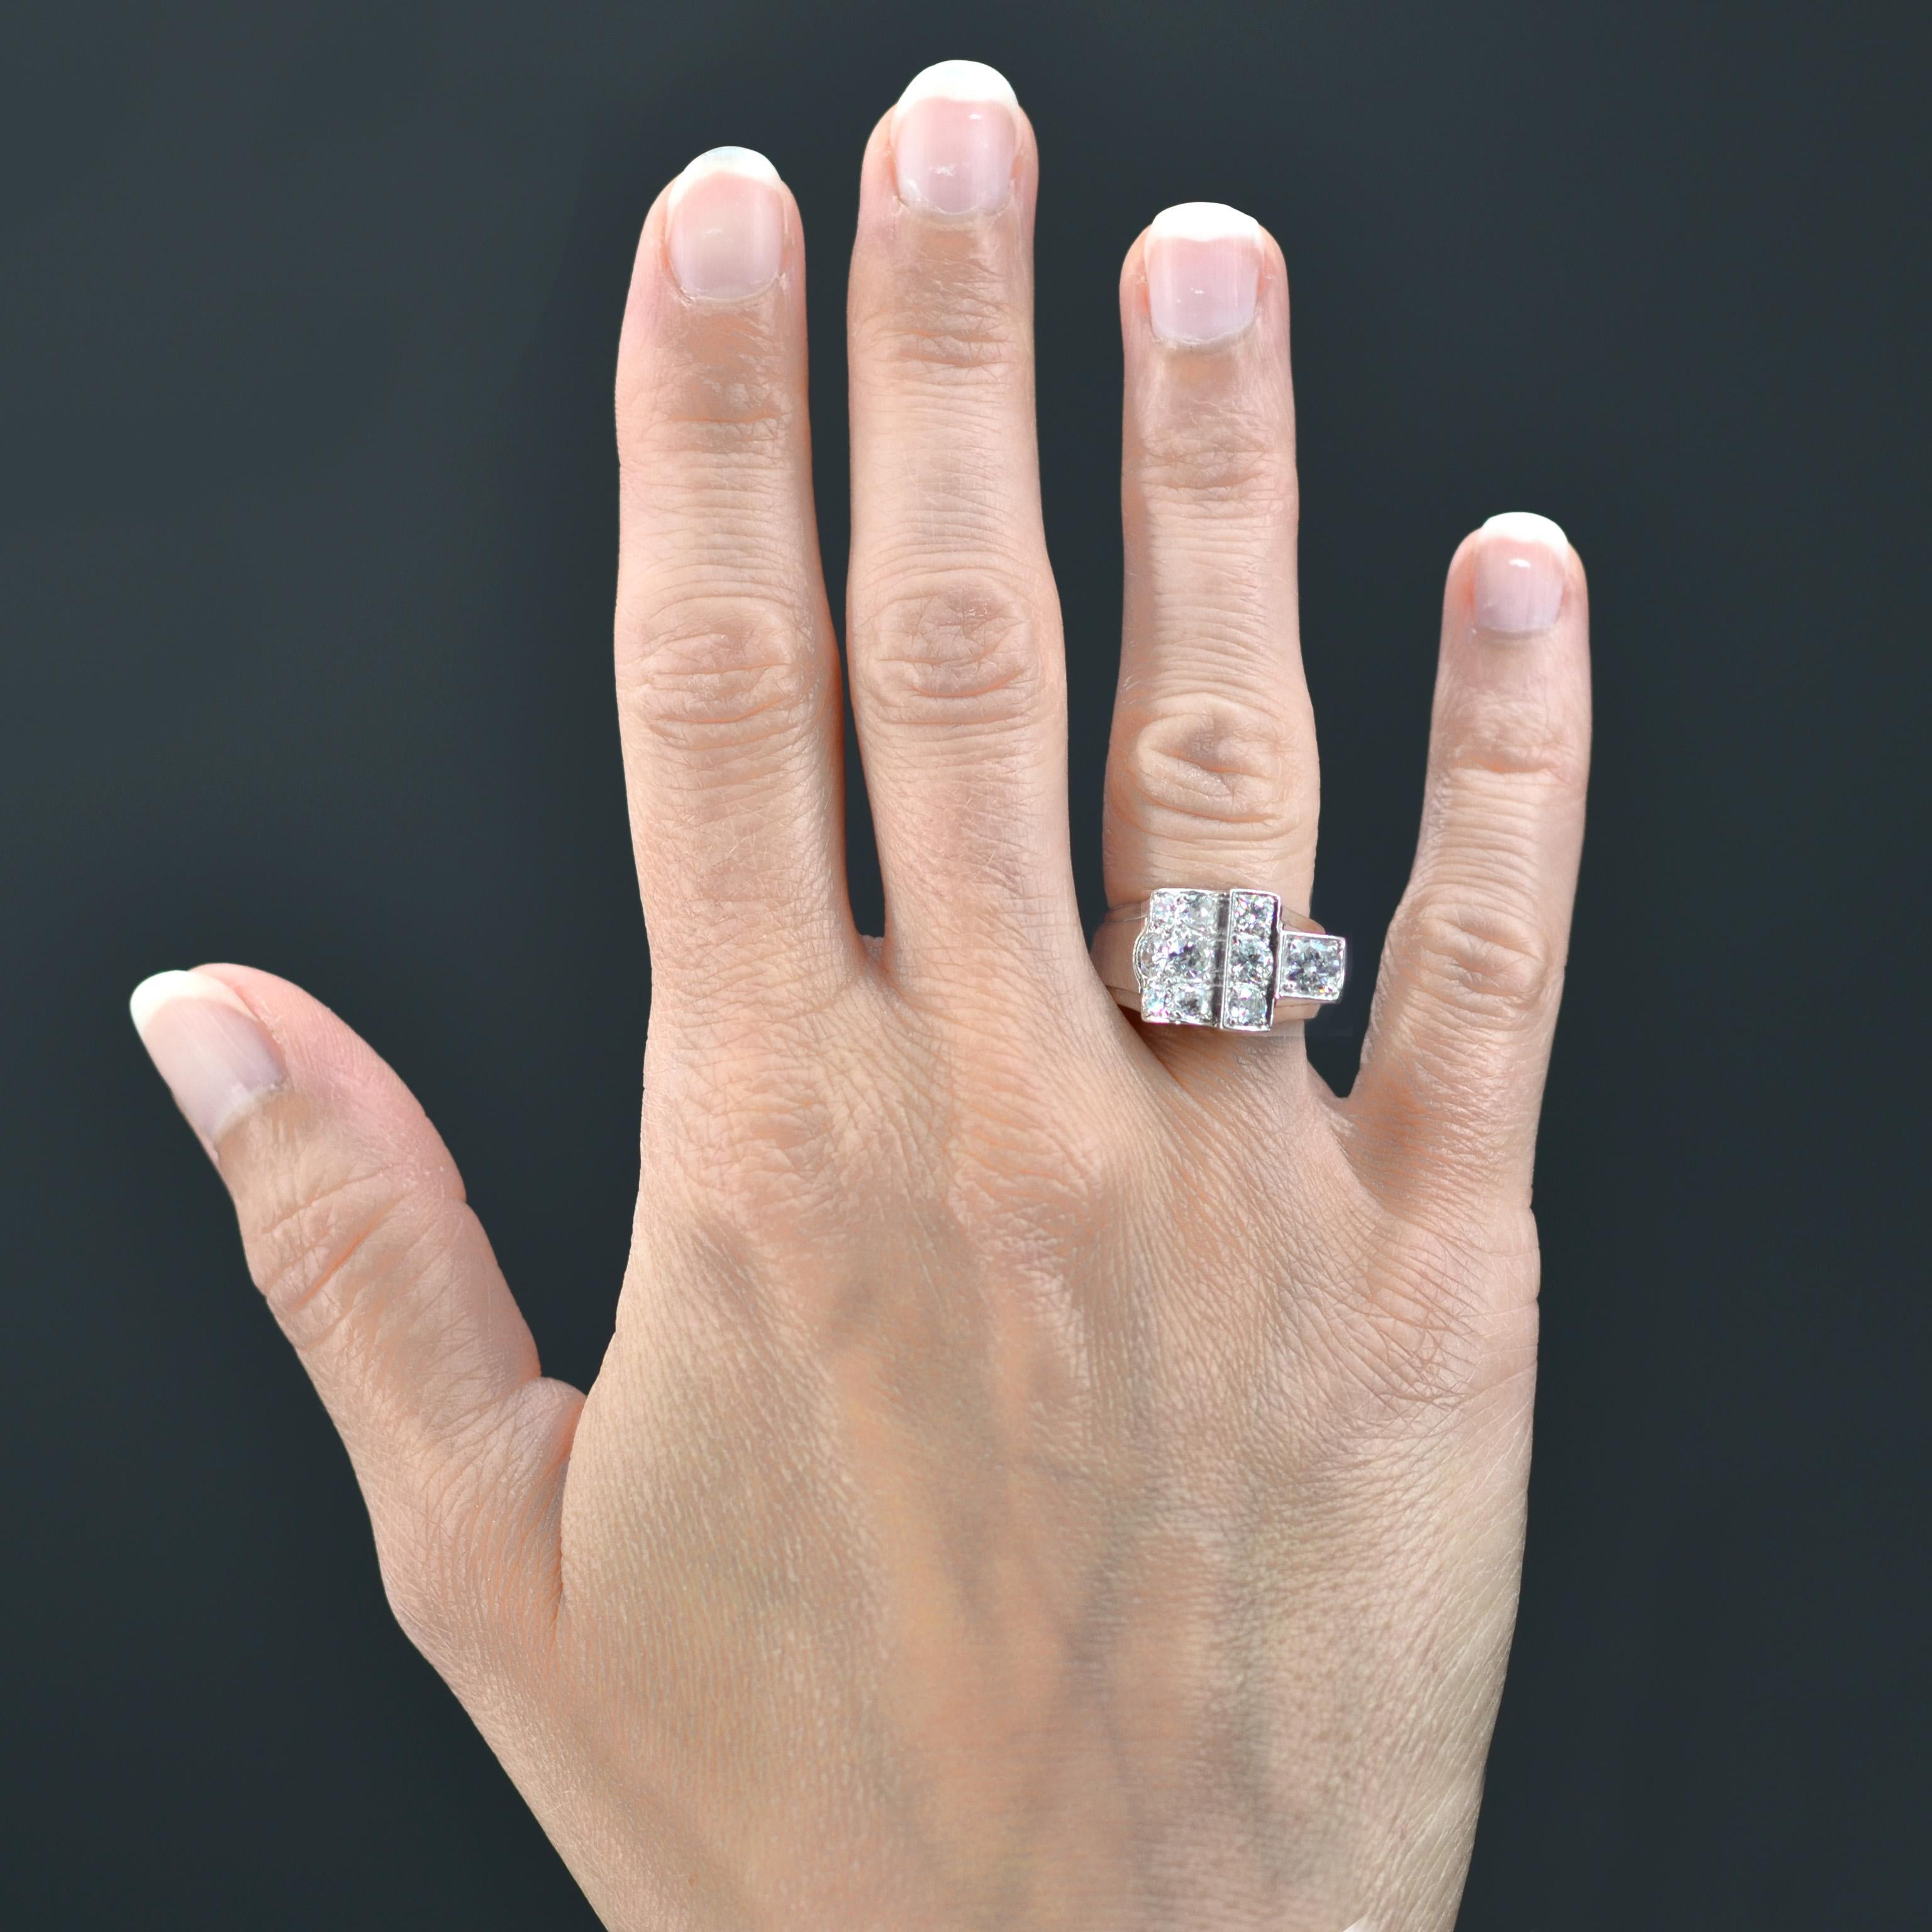 Platinring, groteske Punzierung.
Dieser Art-Déco-Ring präsentiert eine asymmetrische und geometrische Fassung aus antiken Diamanten und Diamanten mit Zwischenschliff. Das Profil ist auf beiden Seiten der Fassung durchbrochen.
Gesamtgewicht der